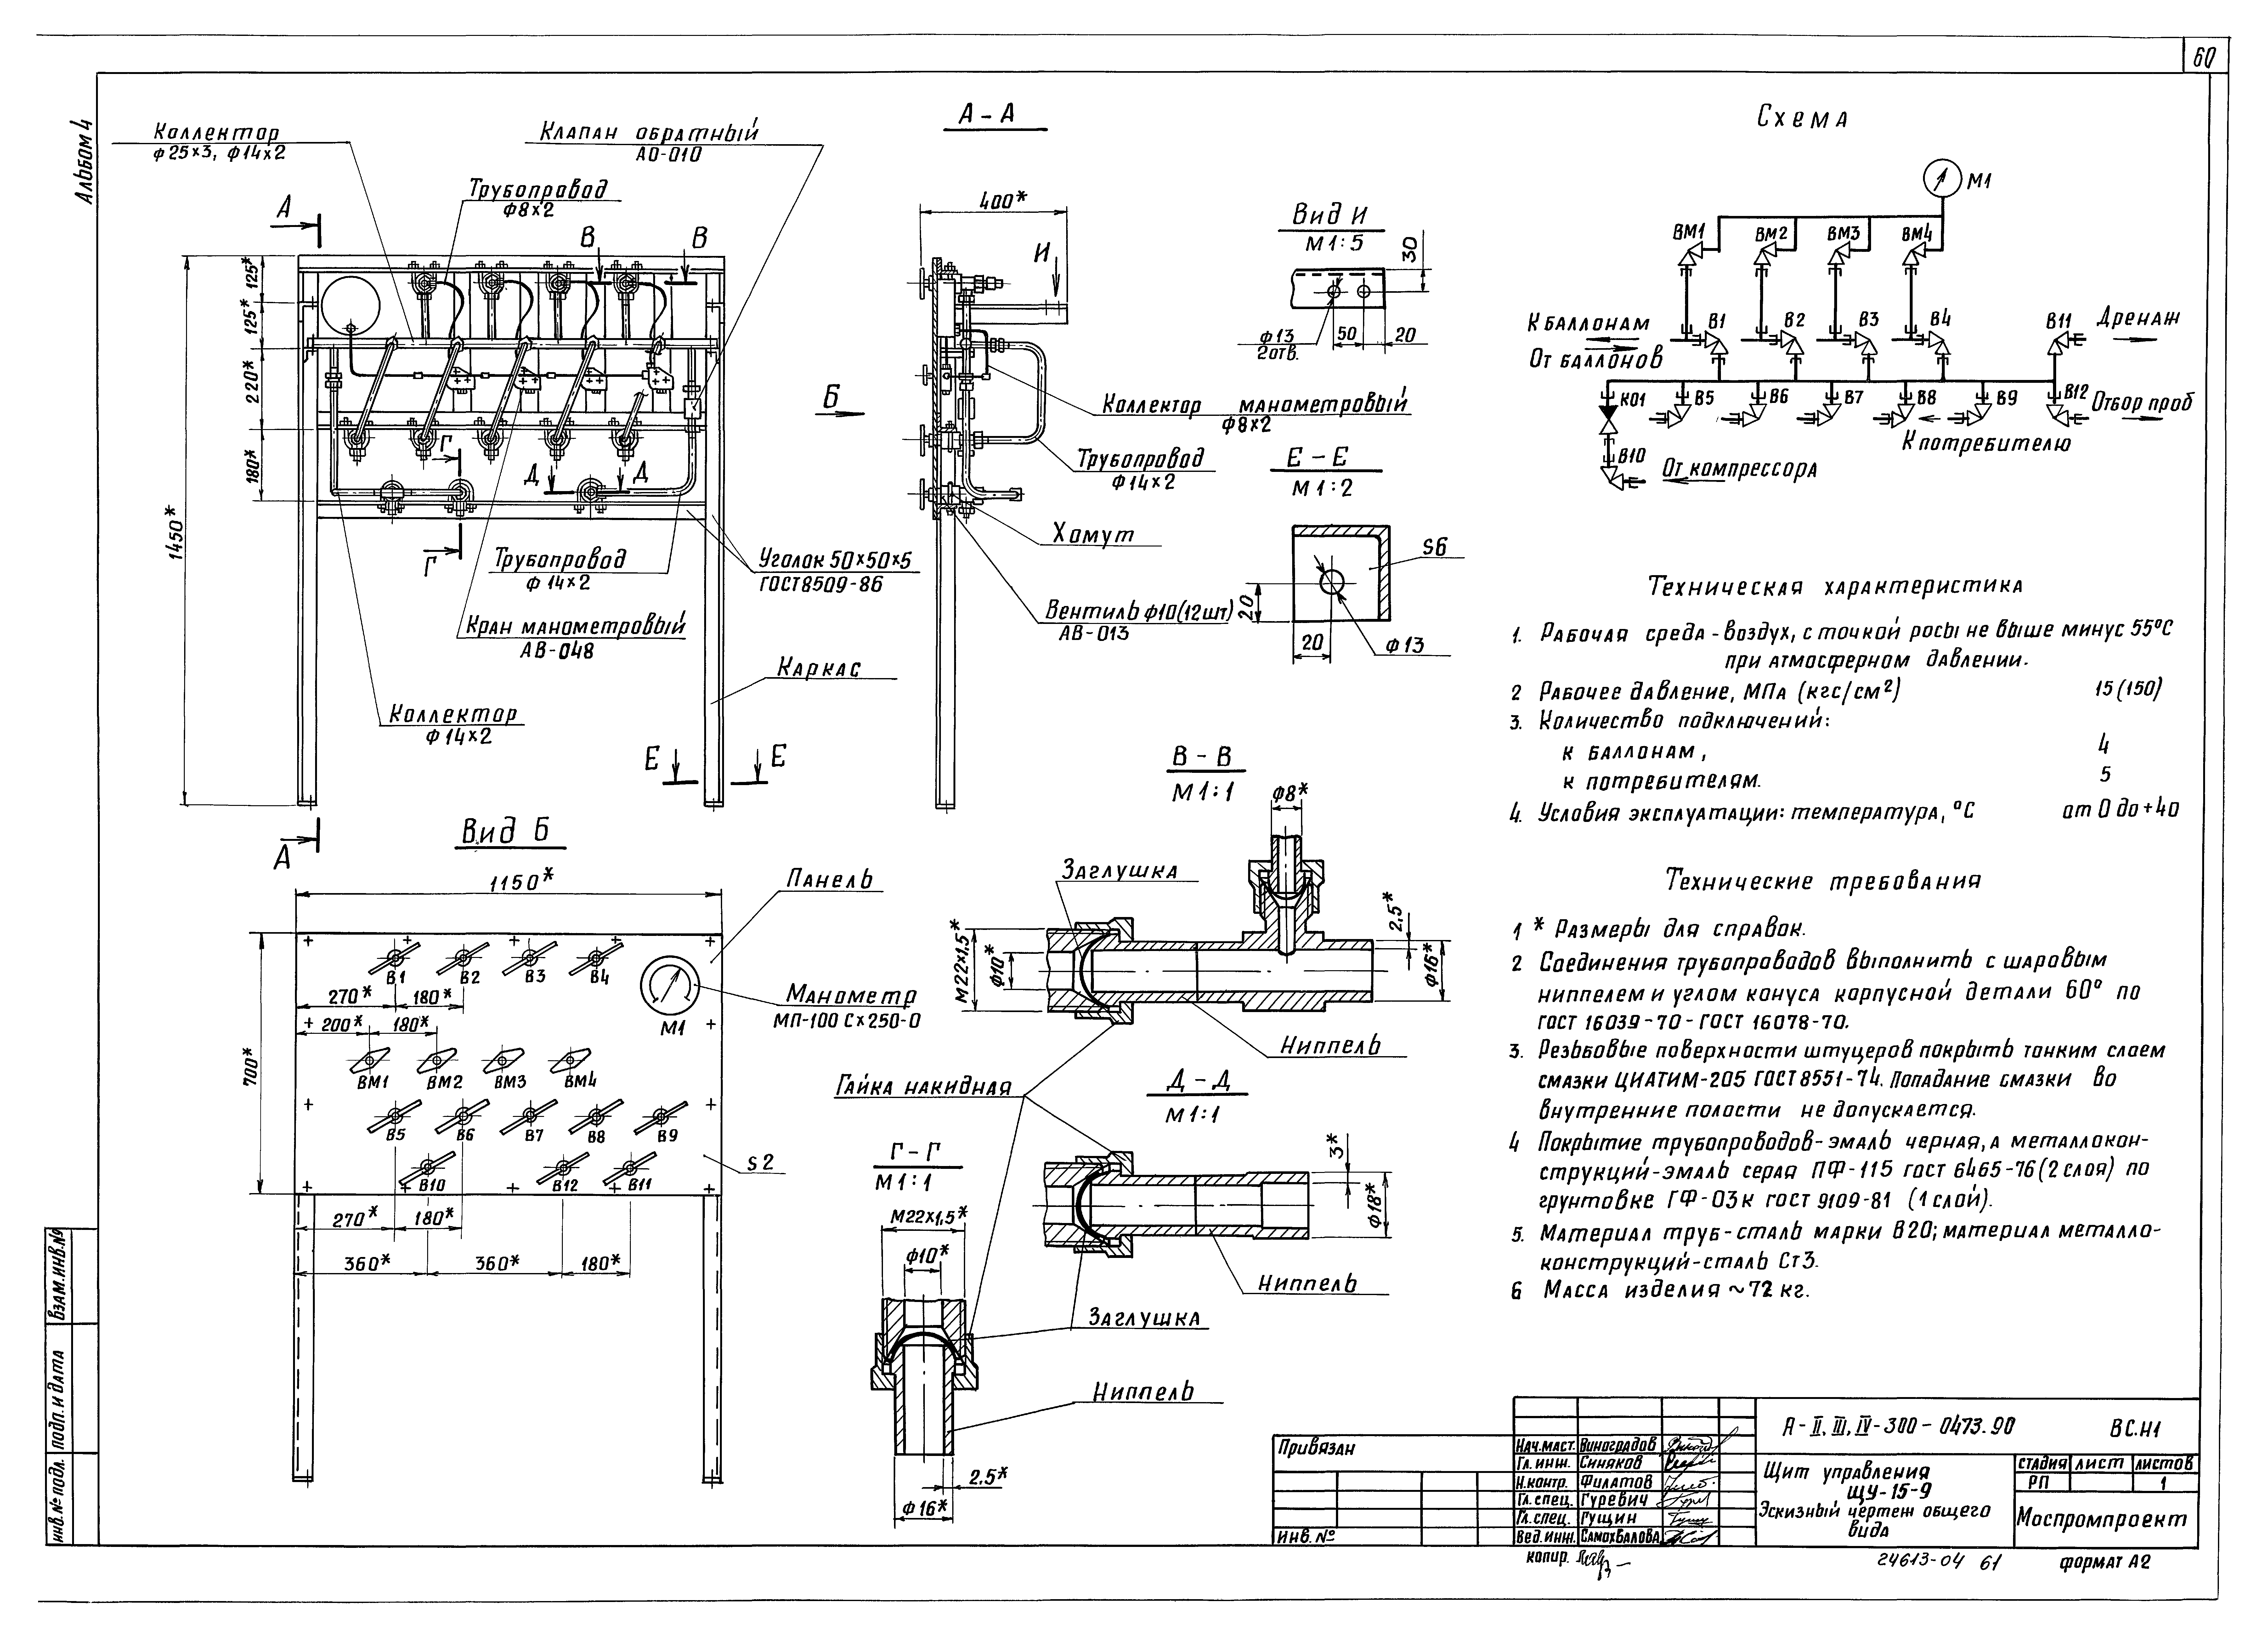 Типовые проектные решения А-II,III,IV-300-0472.90